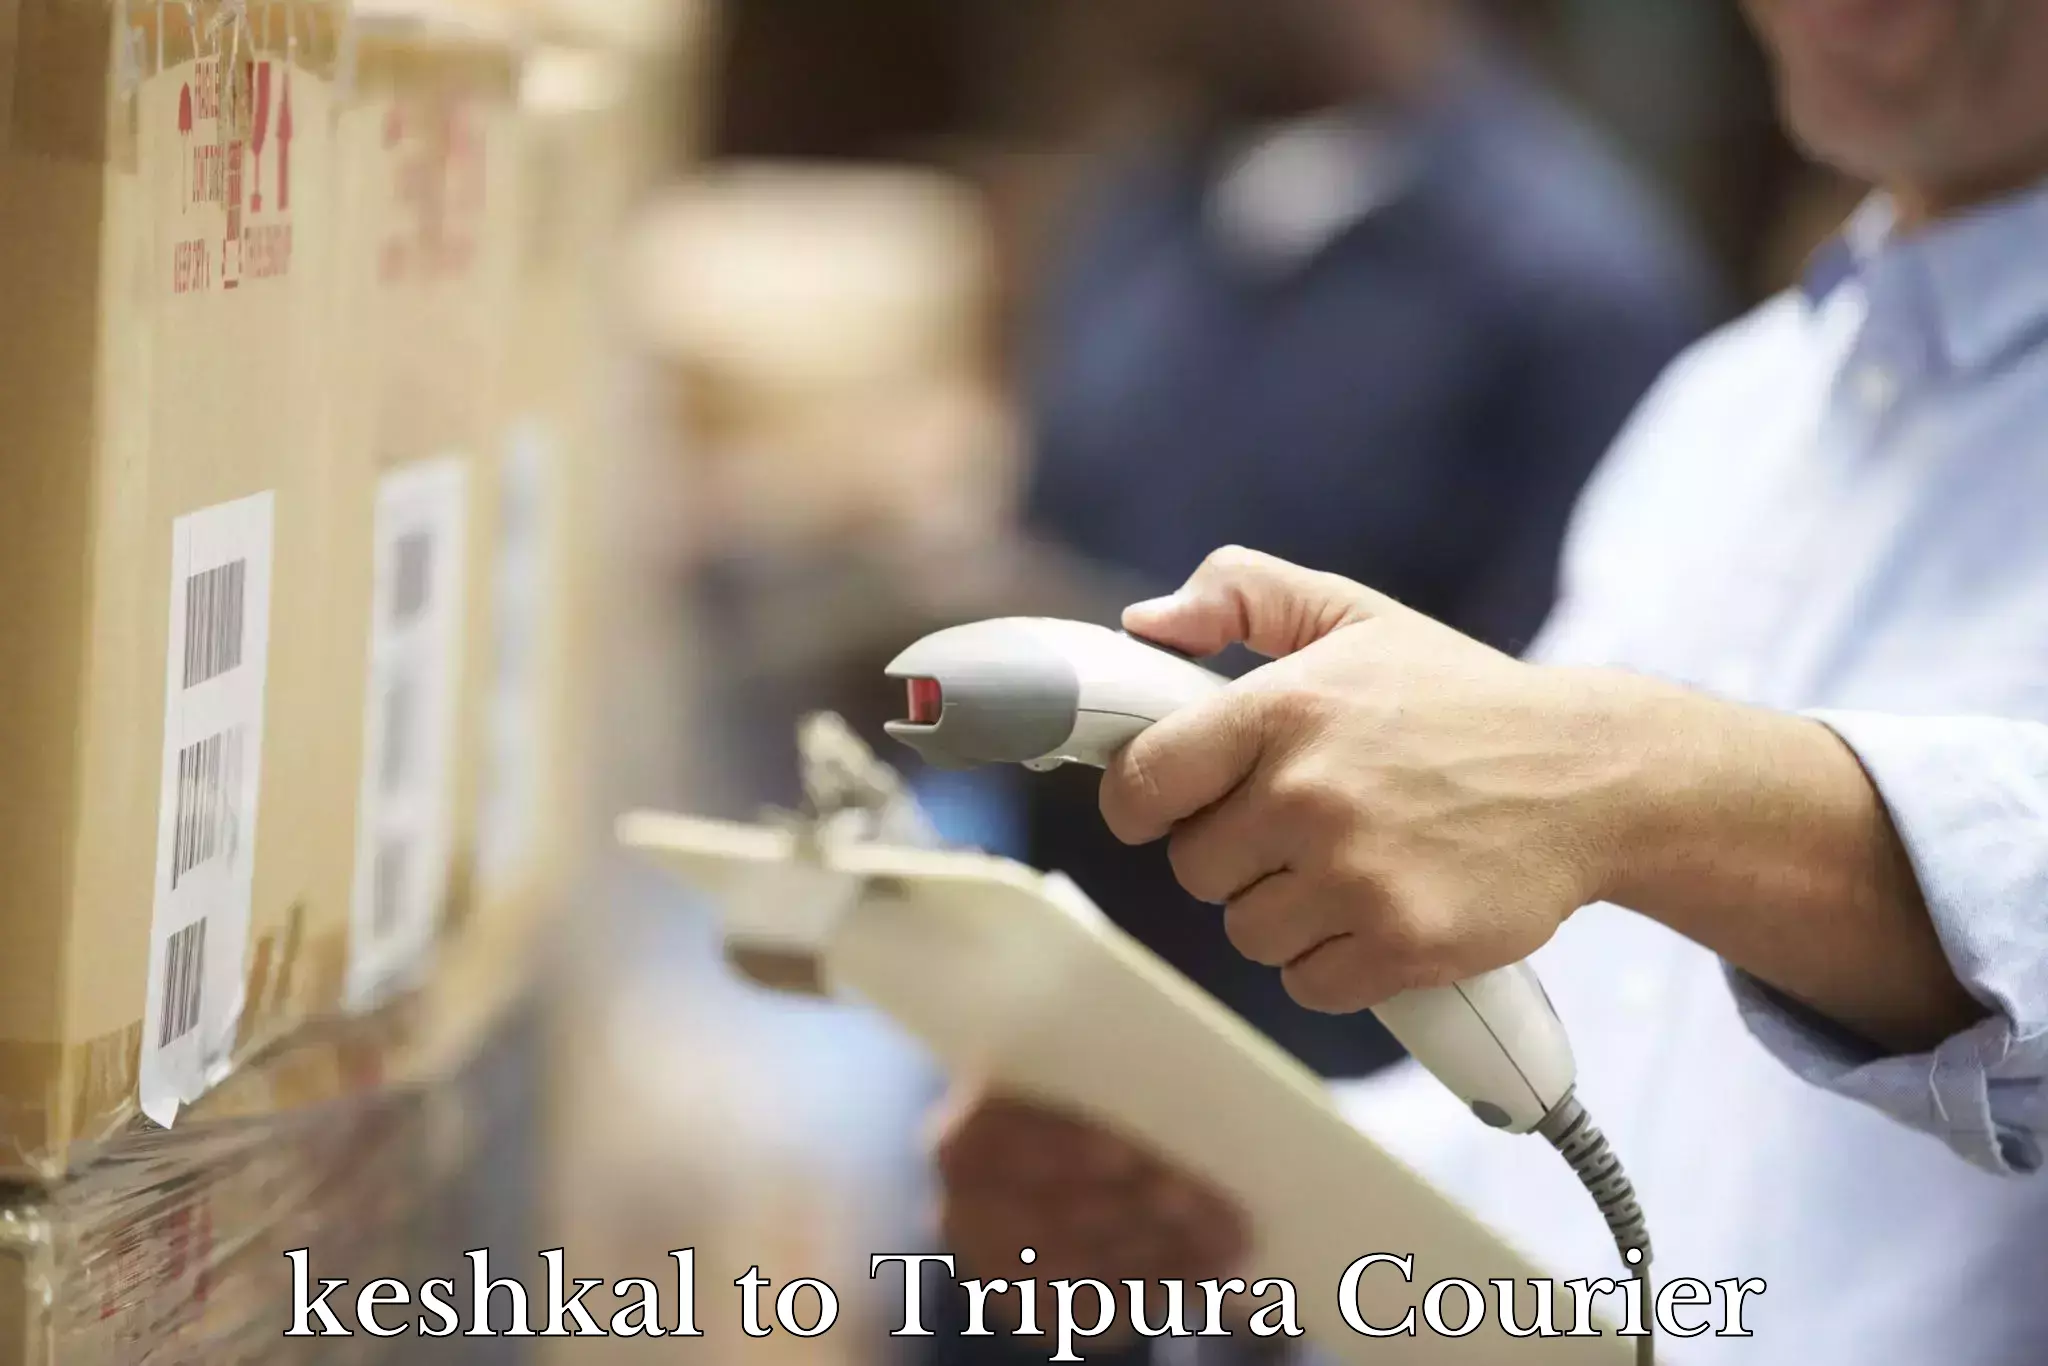 Custom courier packaging keshkal to Tripura